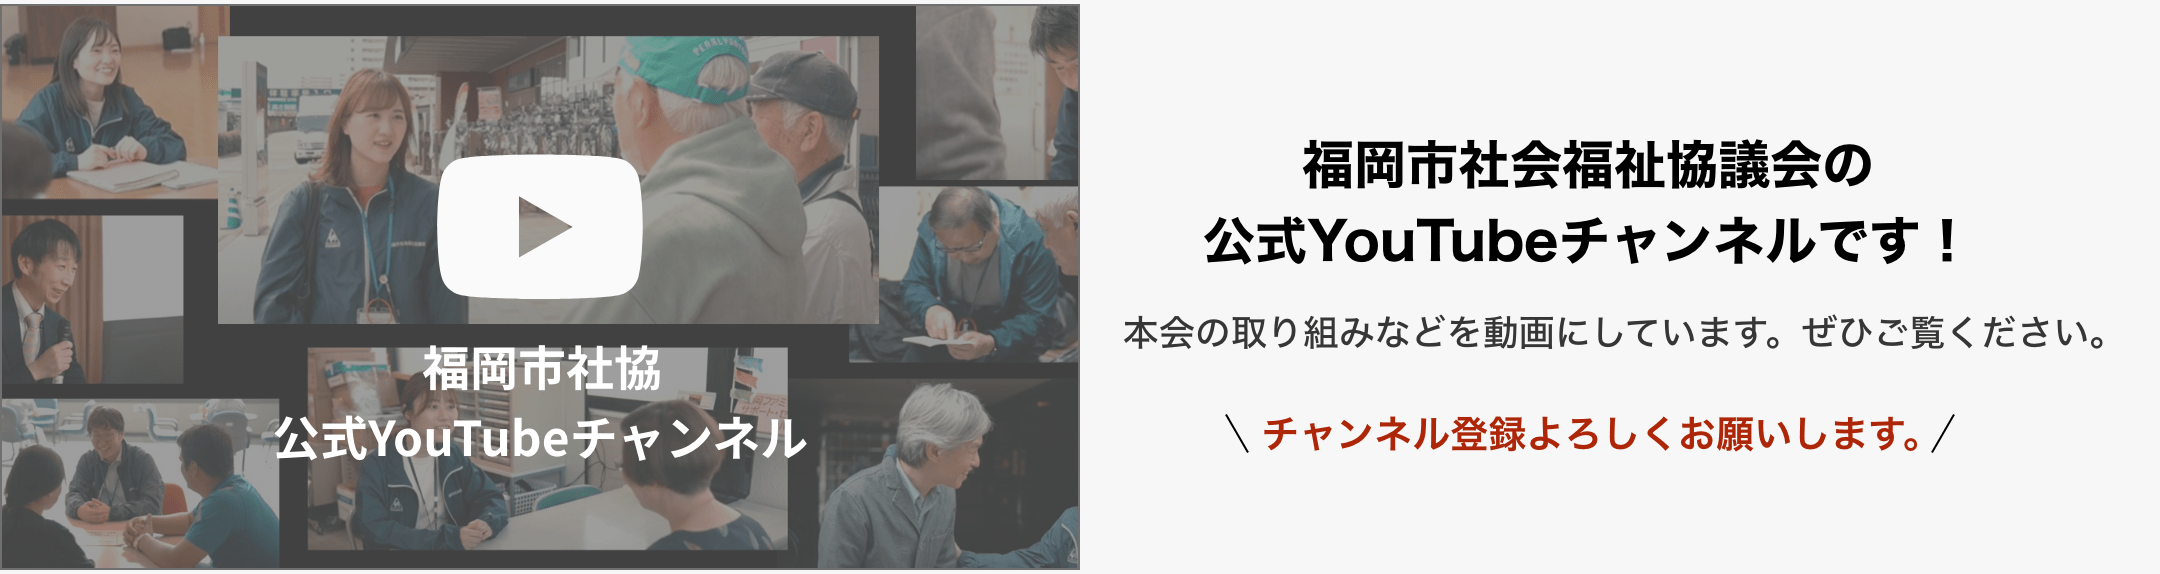 福岡市社会福祉協議会の公式YouTubeチャンネル